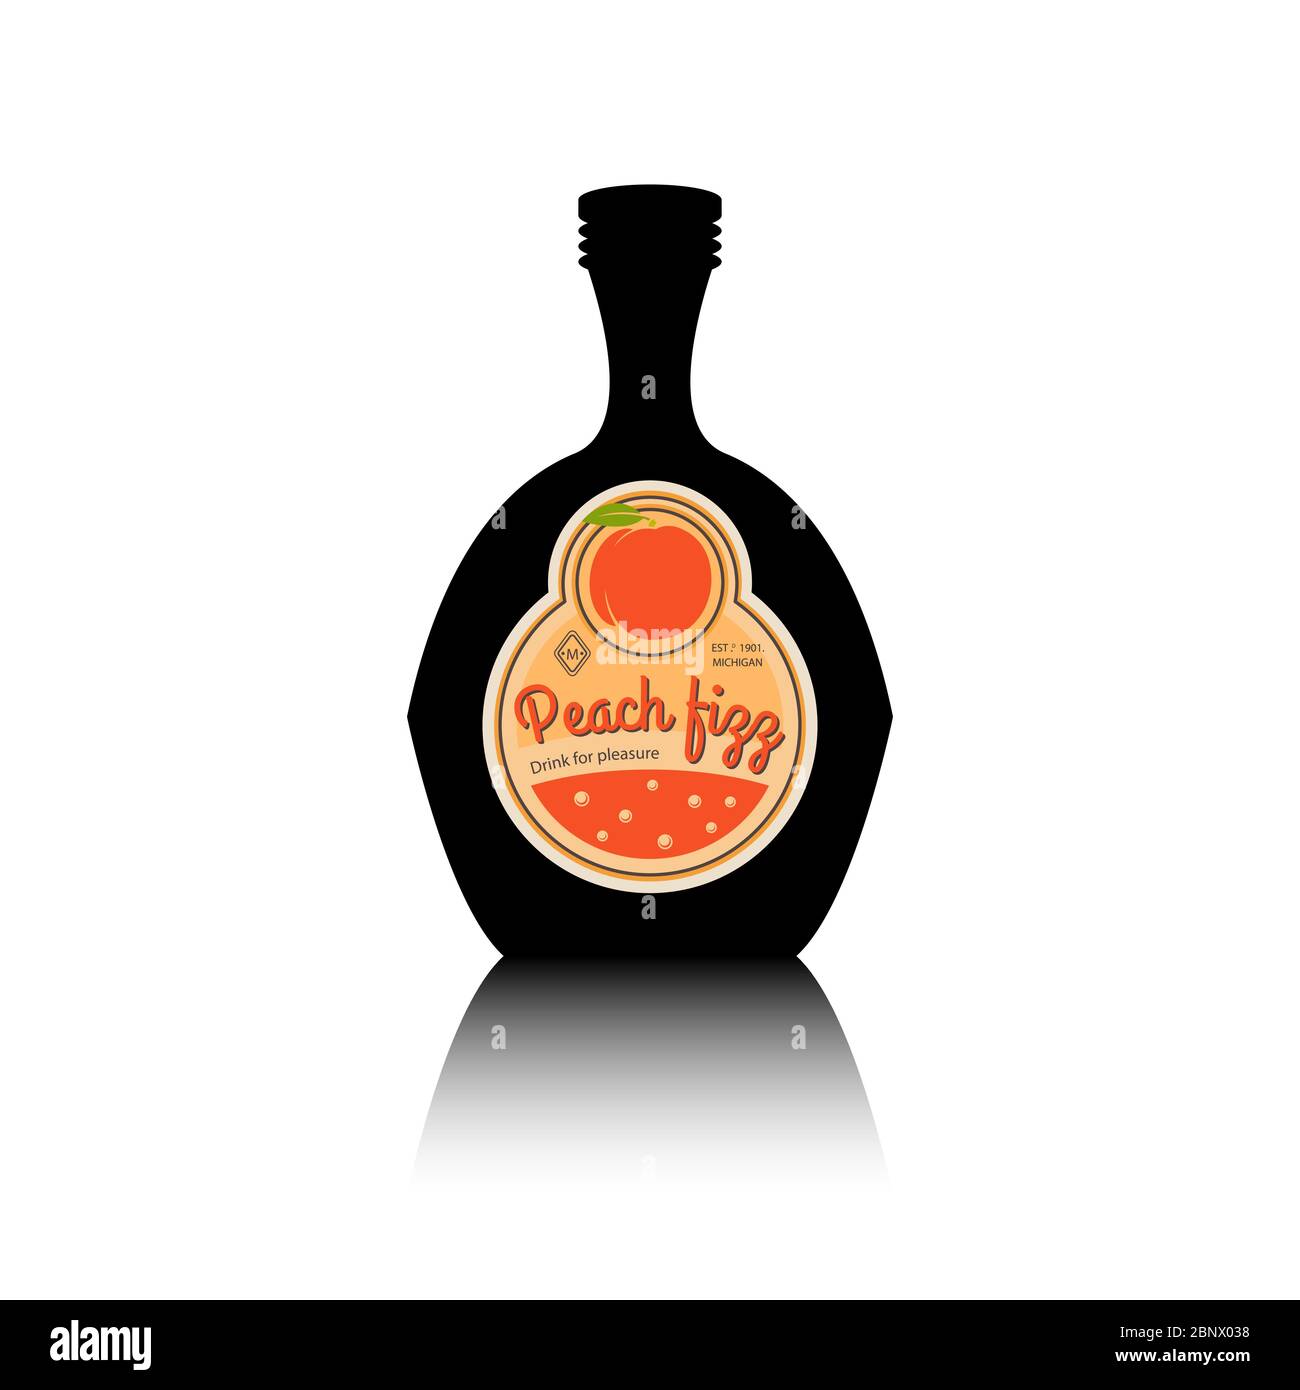 Silhouette nera con etichetta di frutta vintage e riflesso. Illustrazione vettoriale di Peach fizz Illustrazione Vettoriale